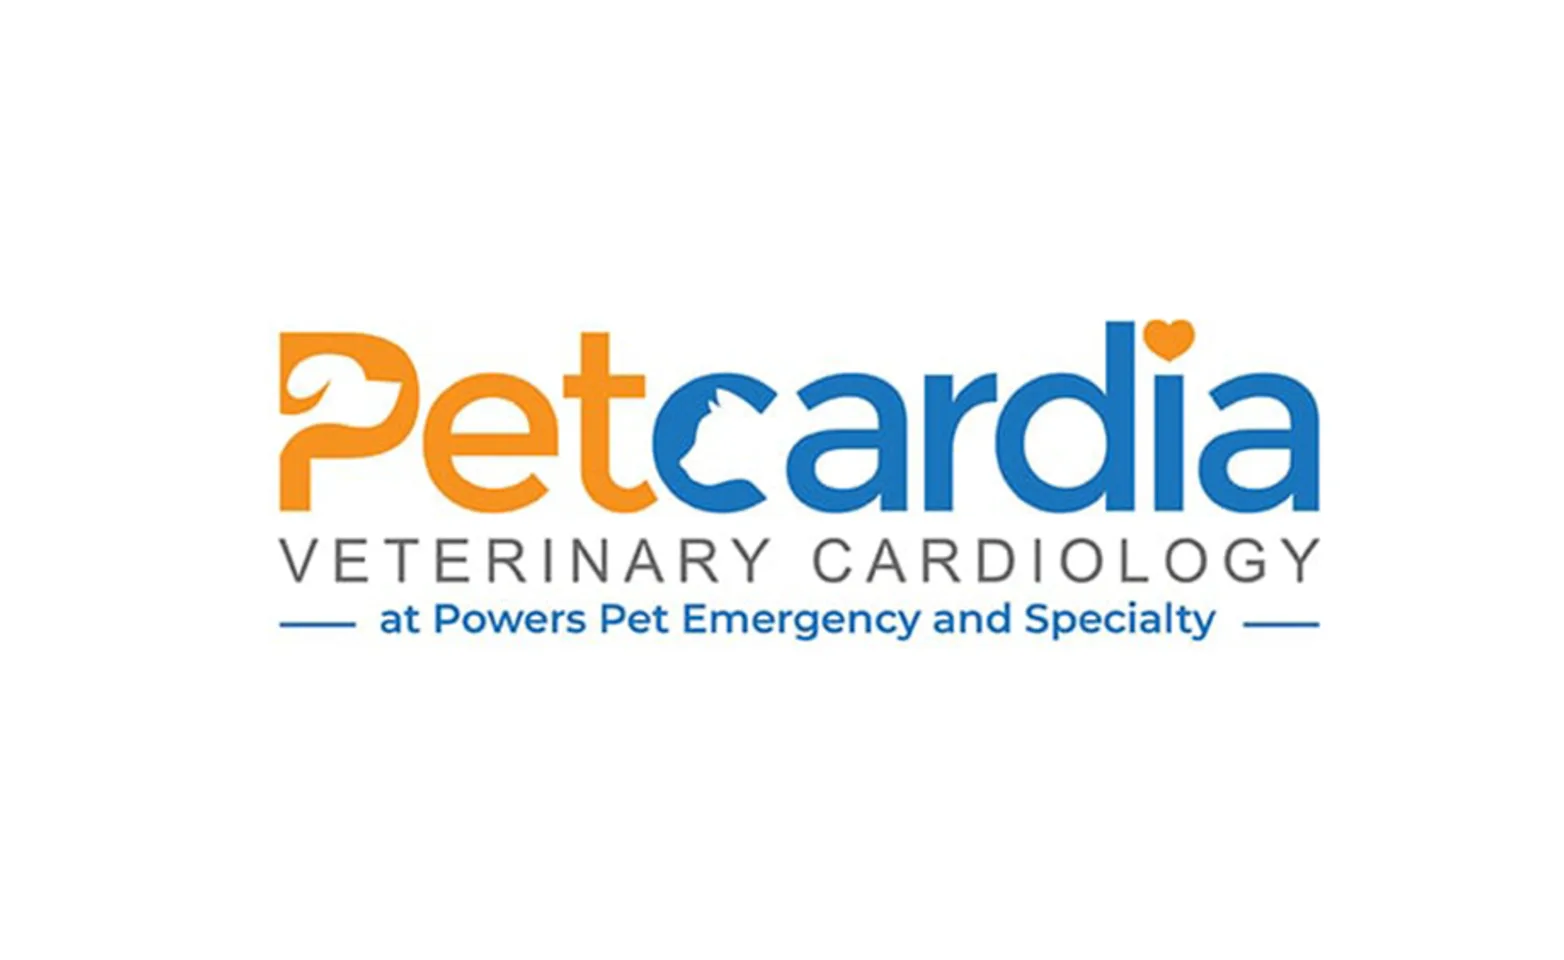 The logo for Petcardia